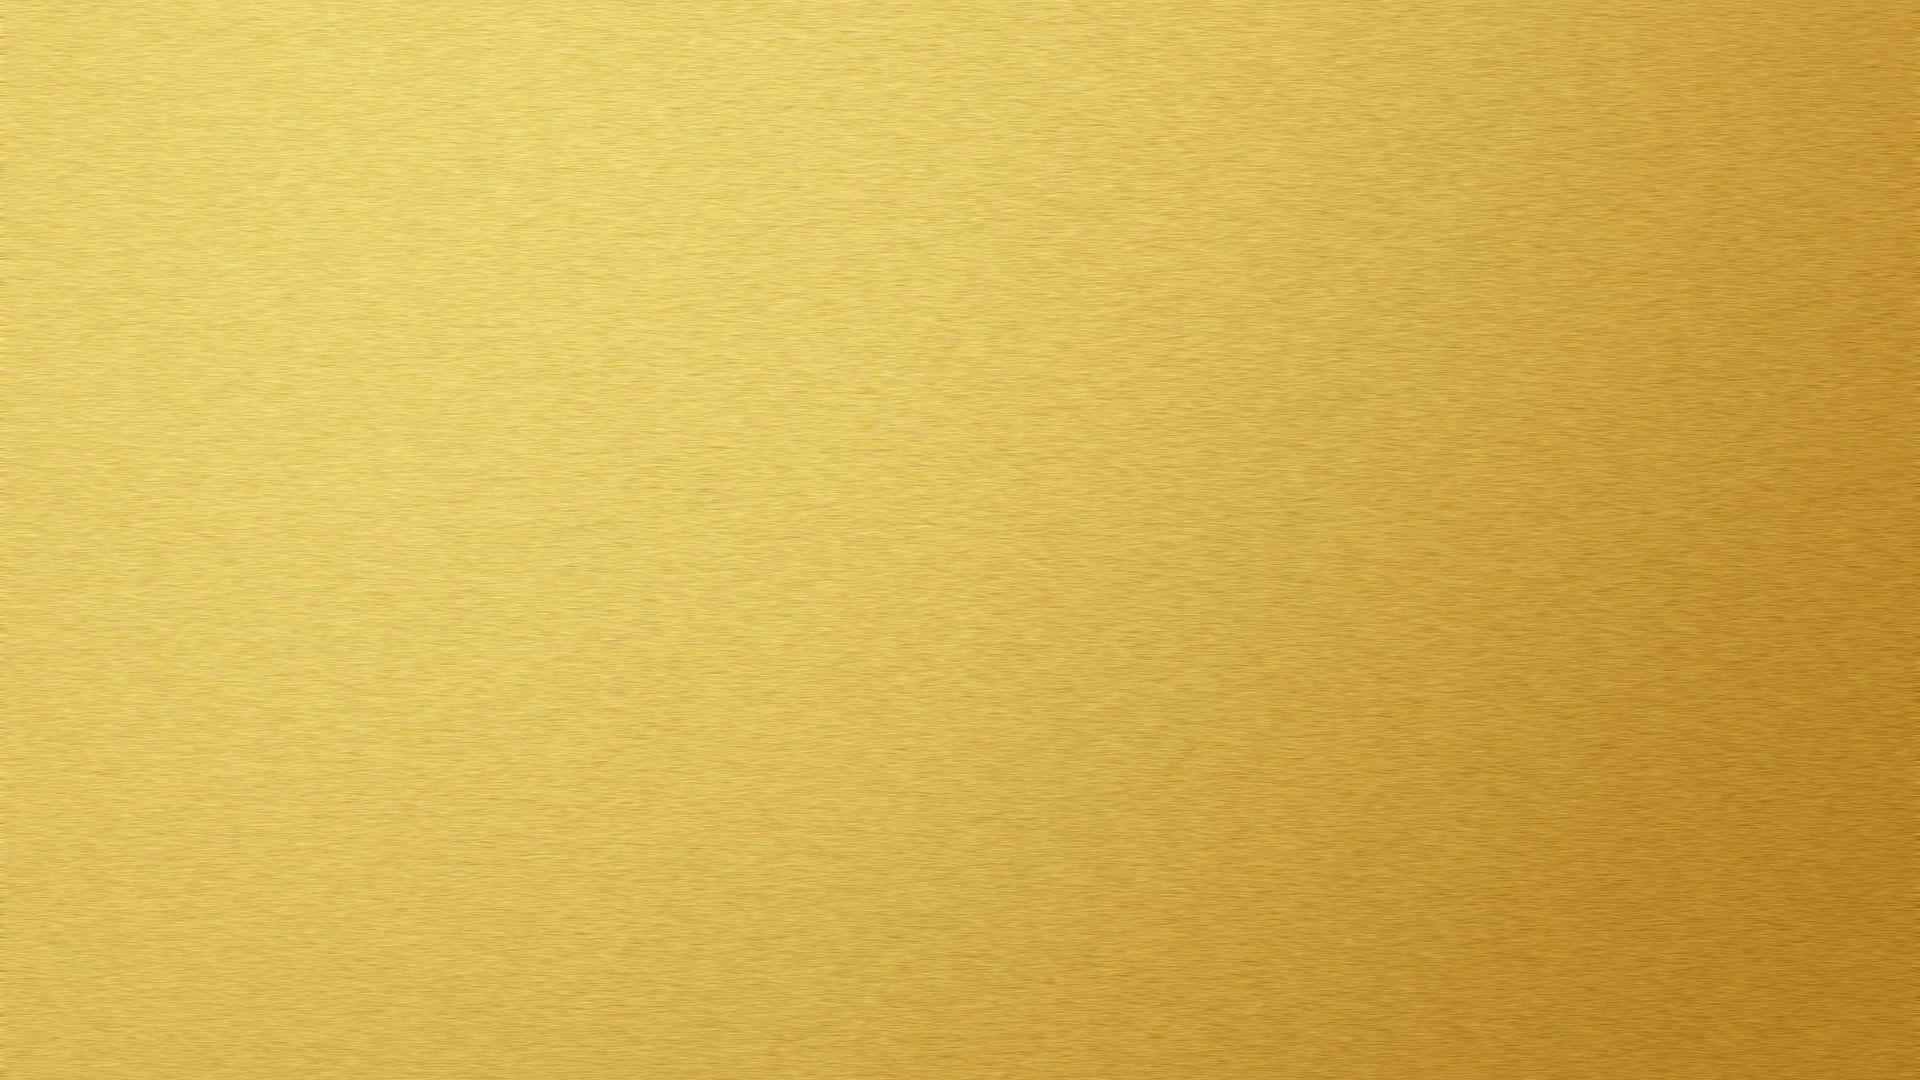 Plain Gold Wallpapers - Top Những Hình Ảnh Đẹp